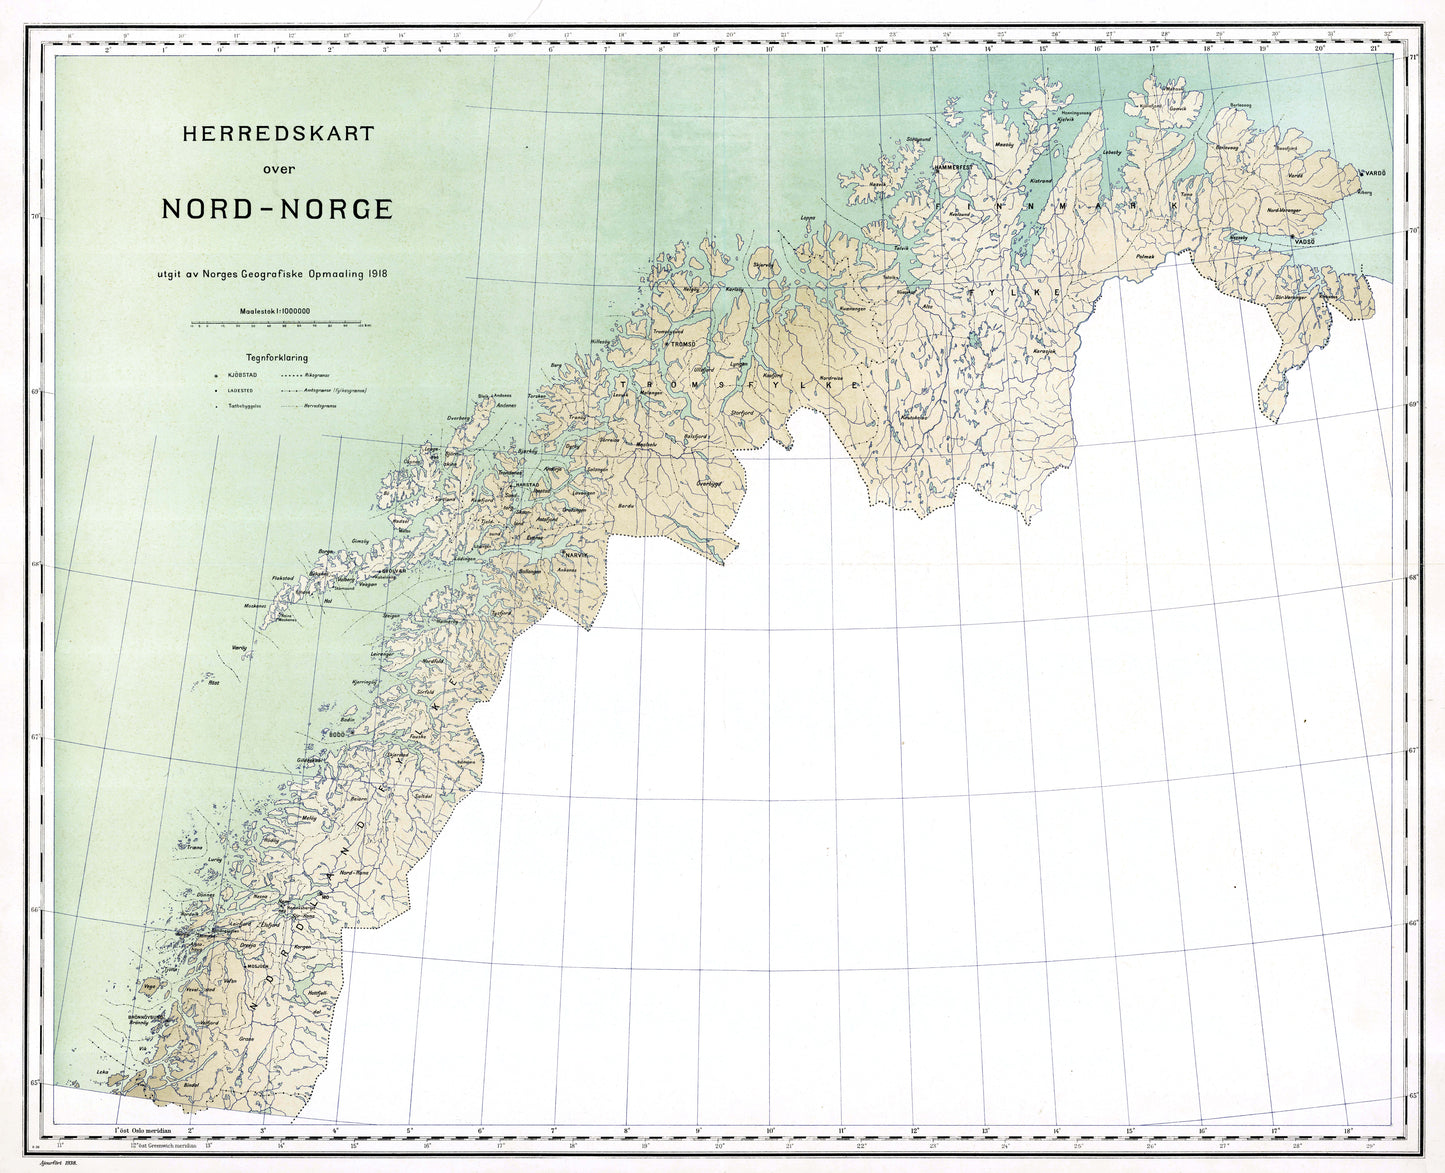 Herredskart over Nord-Norge: Norge